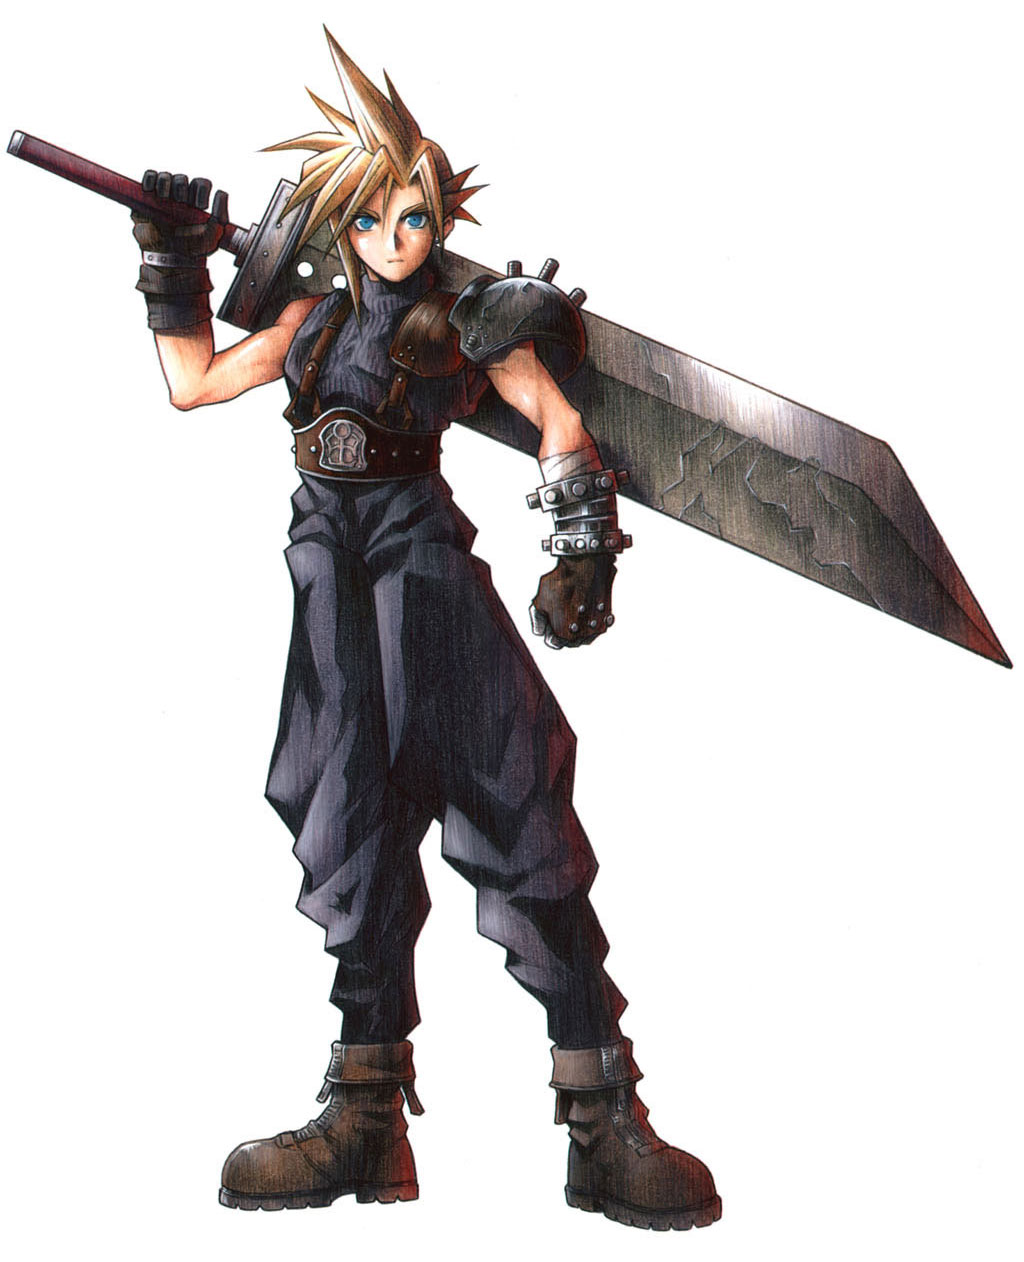 Cloud Strife: Nhân vật đầy quyến rũ của Final Fantasy VII, làm say đắm hàng triệu fan hâm mộ. Hãy thưởng thức những hình ảnh tuyệt đẹp của Cloud Strife, tạo nên sự bất ngờ và ngạc nhiên cho những ai yêu thích thế giới Final Fantasy.